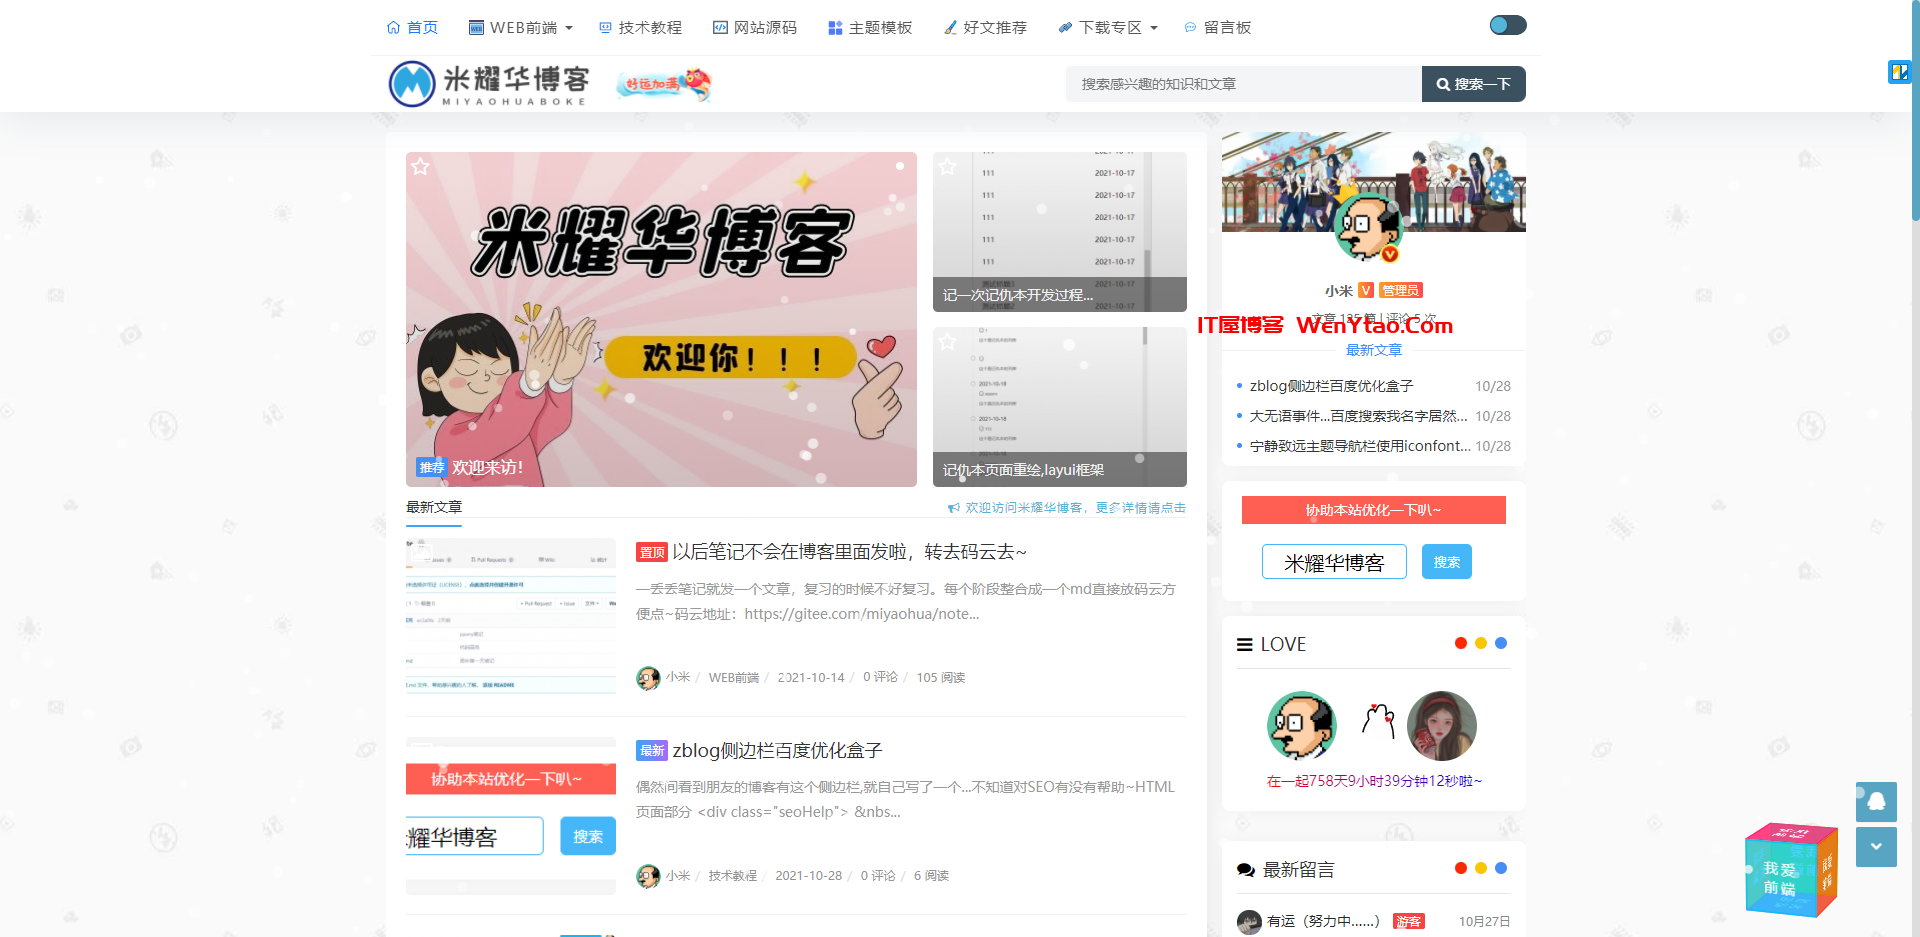 米耀华博客 - 基于建站技术交流的博客网